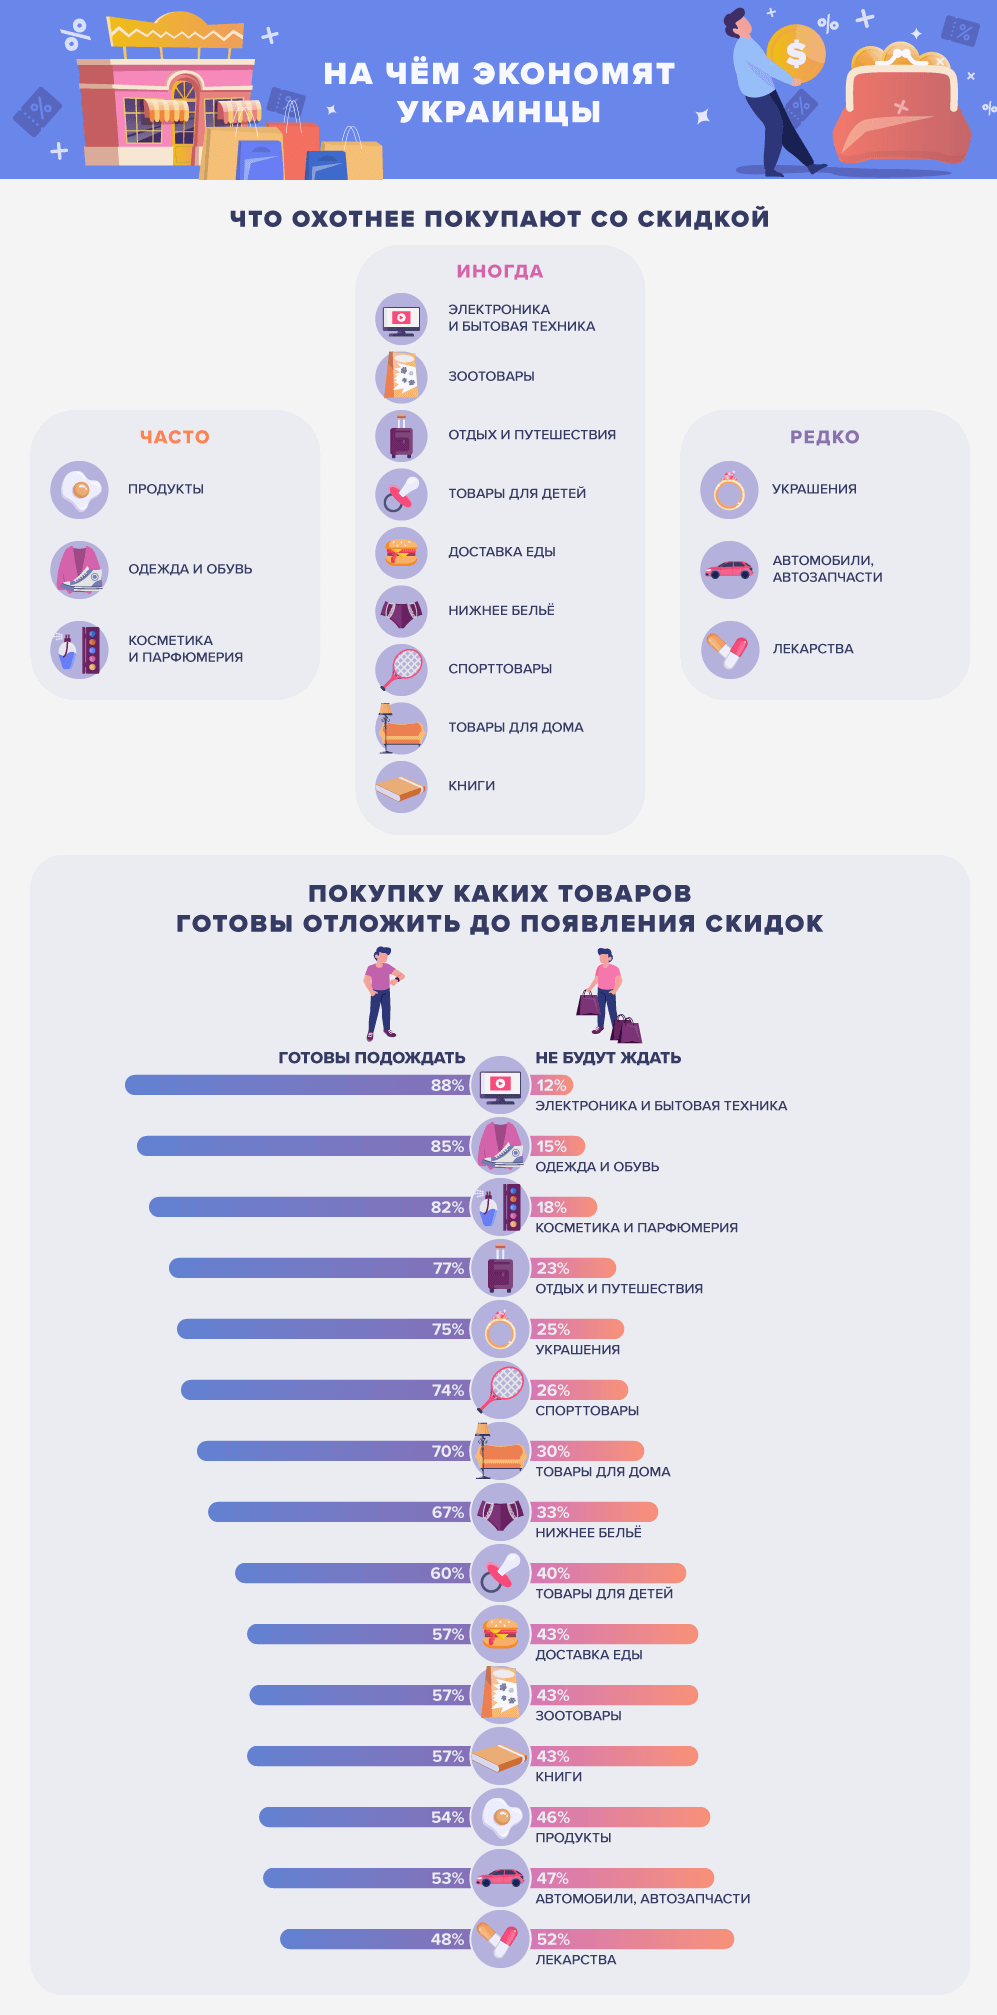 Предлагаем посмотреть инфографику исследования, которая показывает, что охотнее всего покупают украинцы на распродаже, а покупку каких вещей готовы “отложить” до снижения цены.